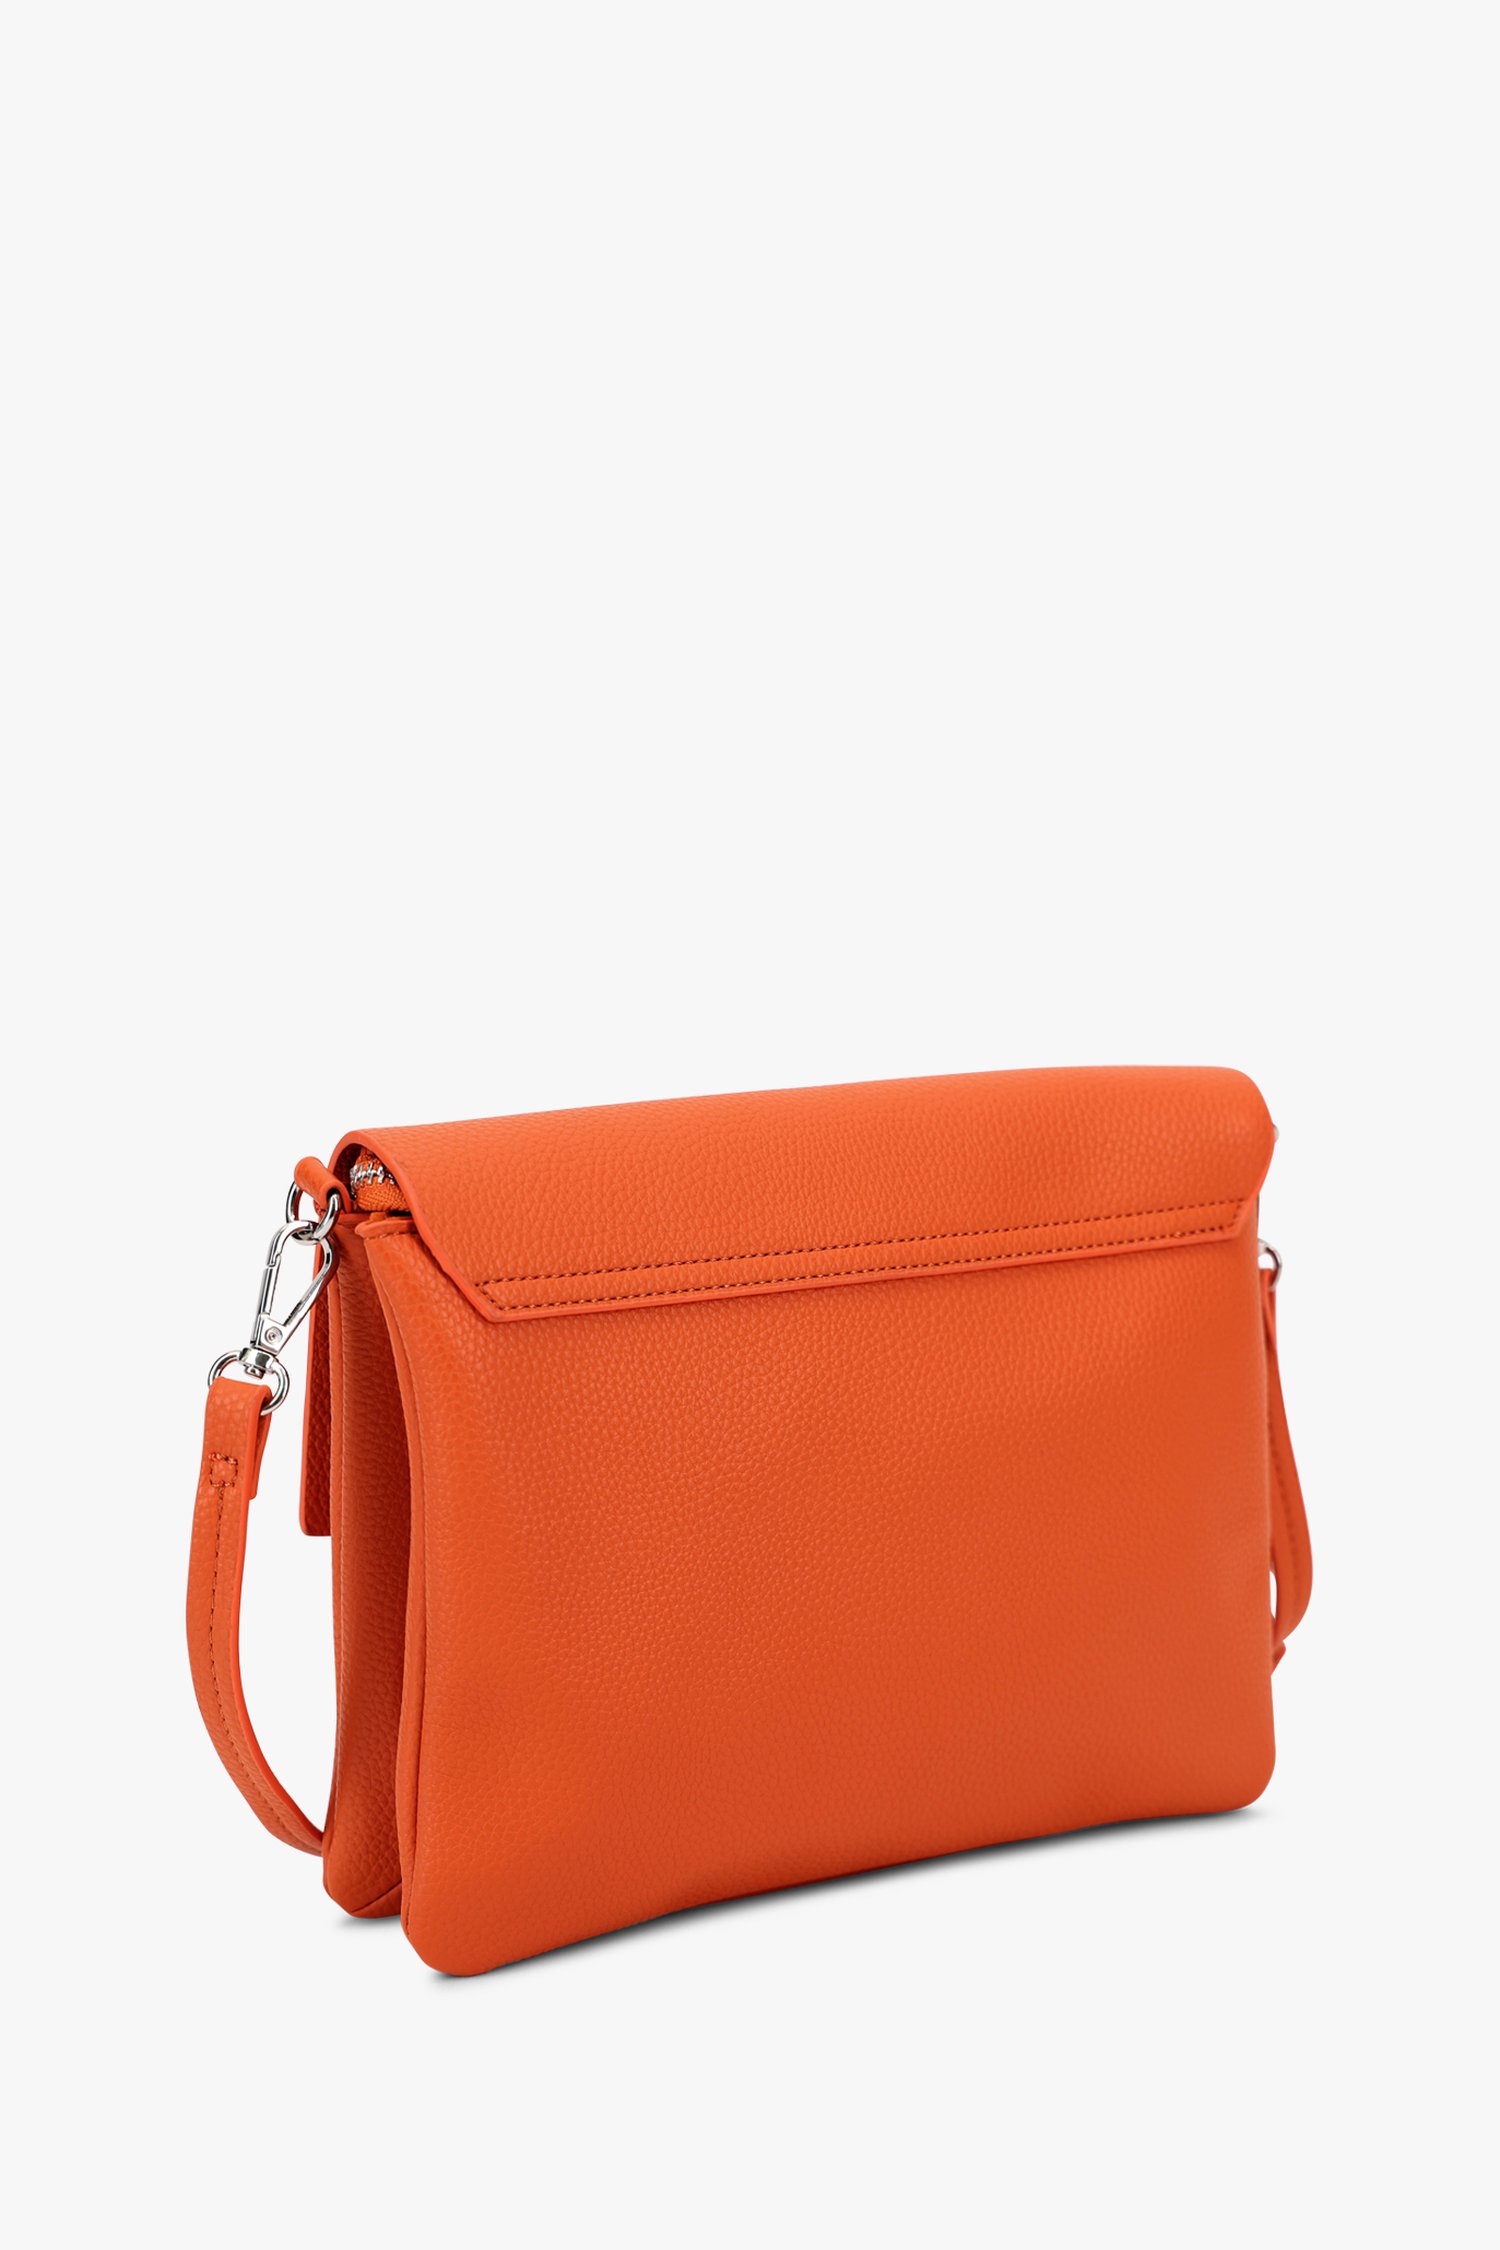 sac à bandoulière orange de Modeno pour Femmes